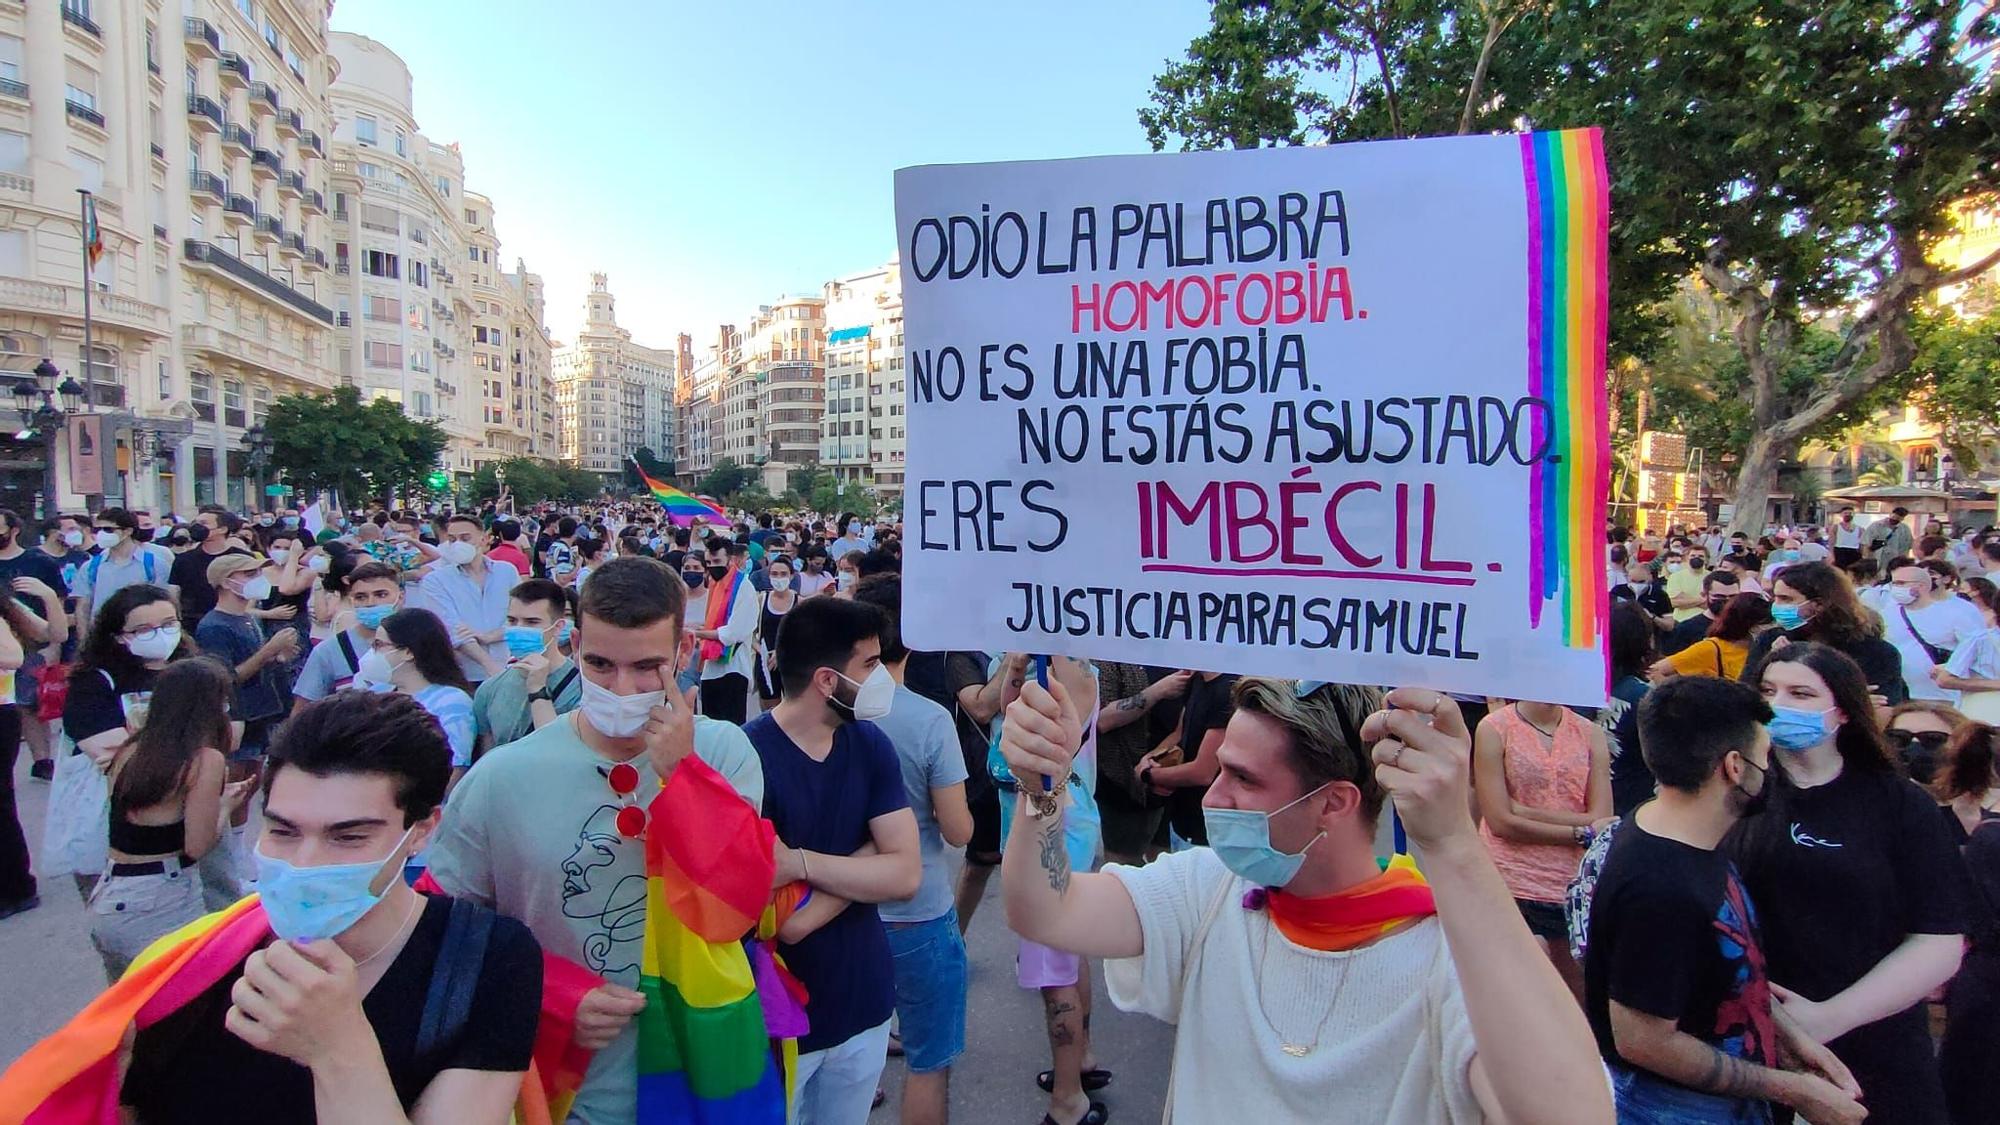 Manifestación pidiendo #JusticiaparaSamuel y contra la homofobia en València